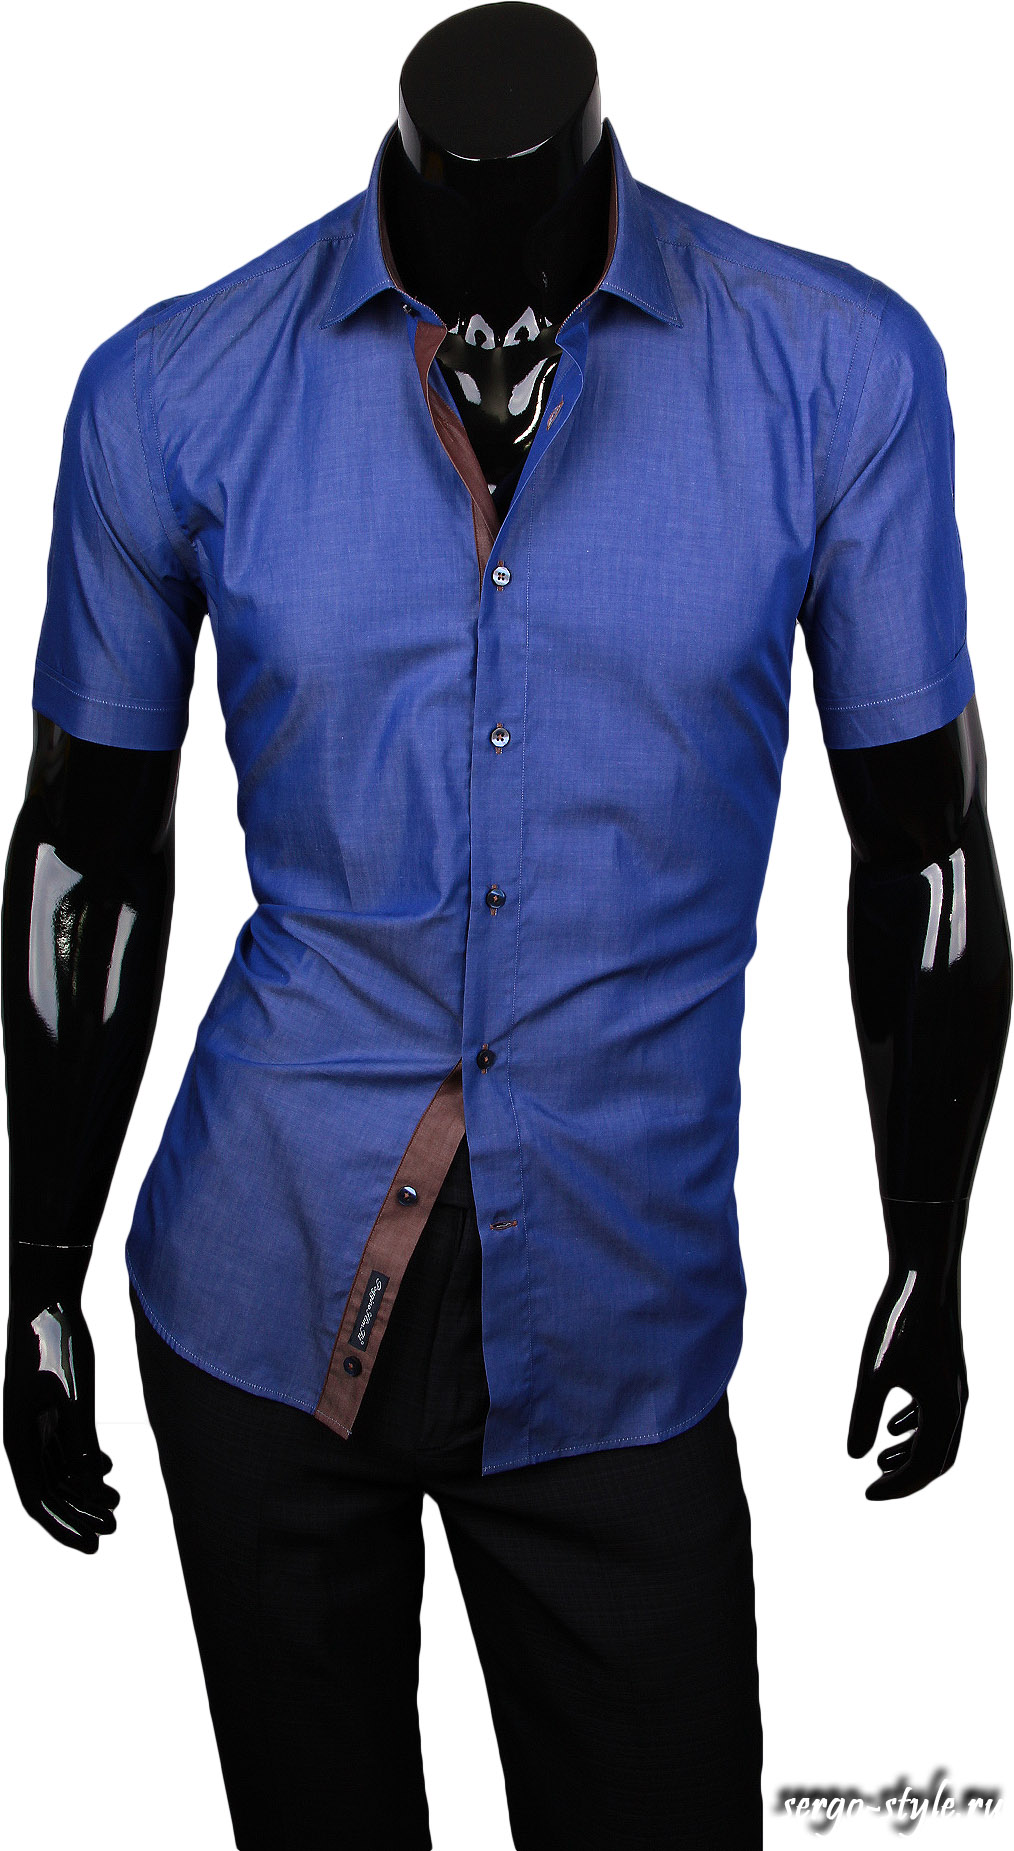 Синяя приталенная мужская рубашка с коротким рукавом